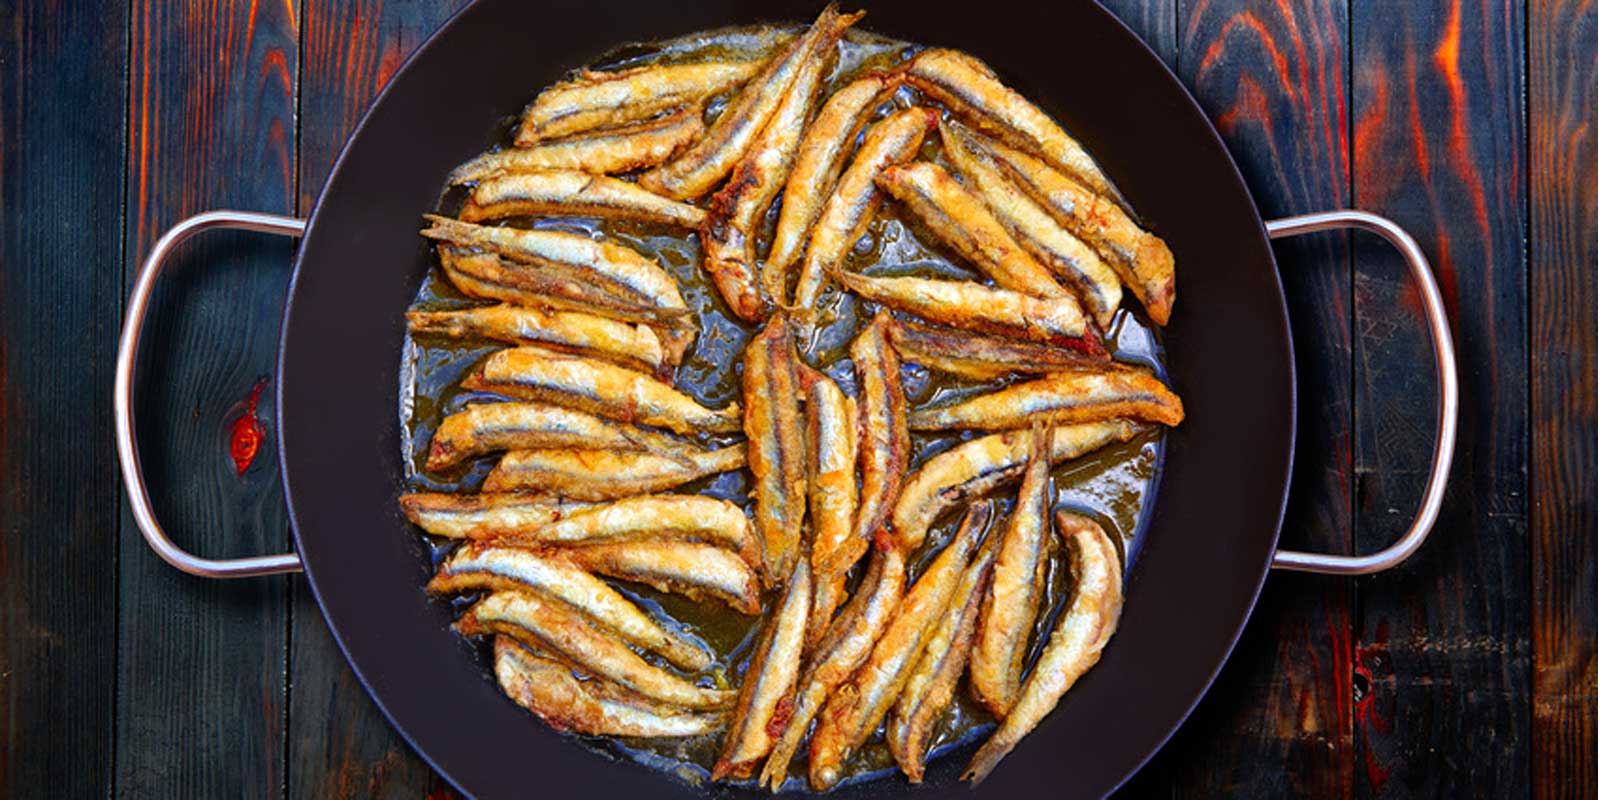 Productos de anchoa filetes de anchoa en escabeche, anchoas marinadas, pasta de anchoa